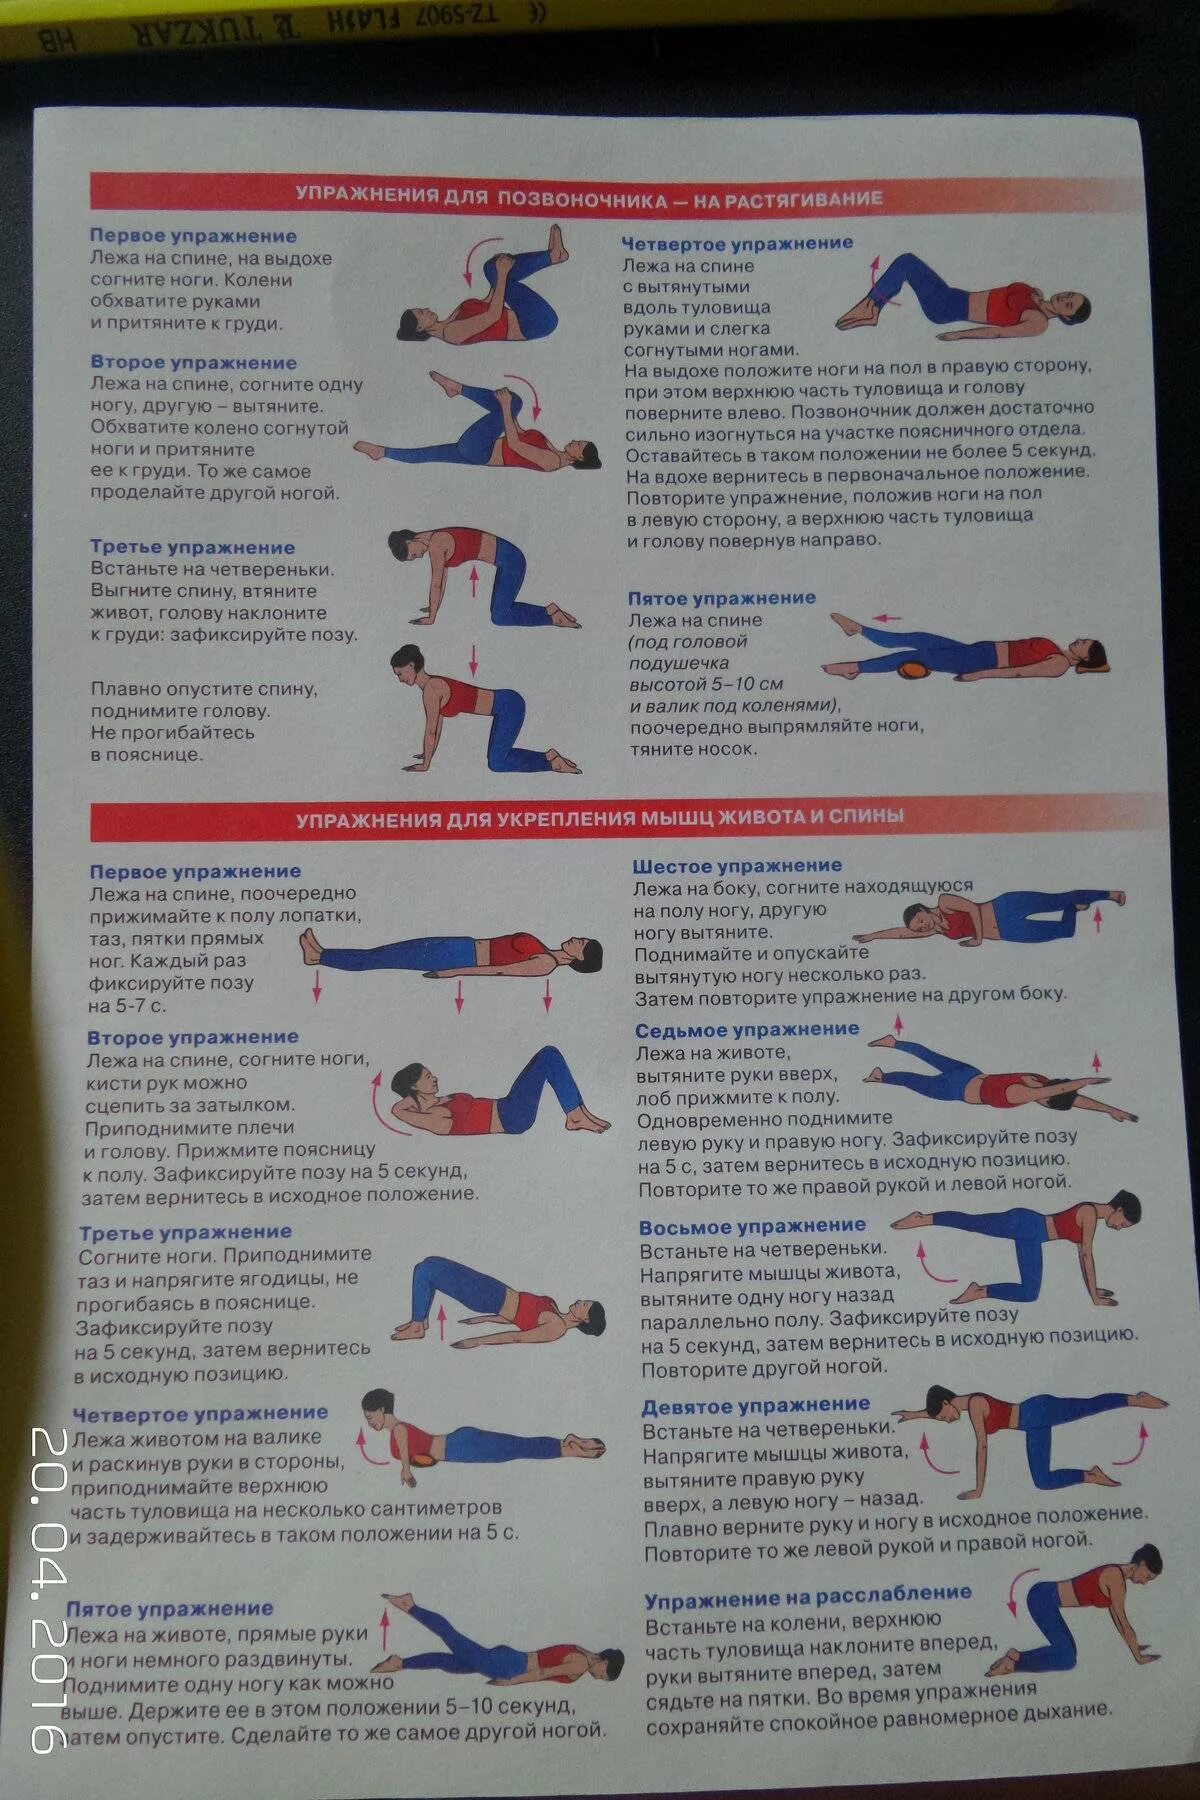 Гимнастика для укрепления мышц спины. Комплекс для укрепления мышц спины и позвоночника. Упражнения для укрепления мышц спины и позвоночника для женщин. Комплекс ЛФК для укрепления мышц спины.